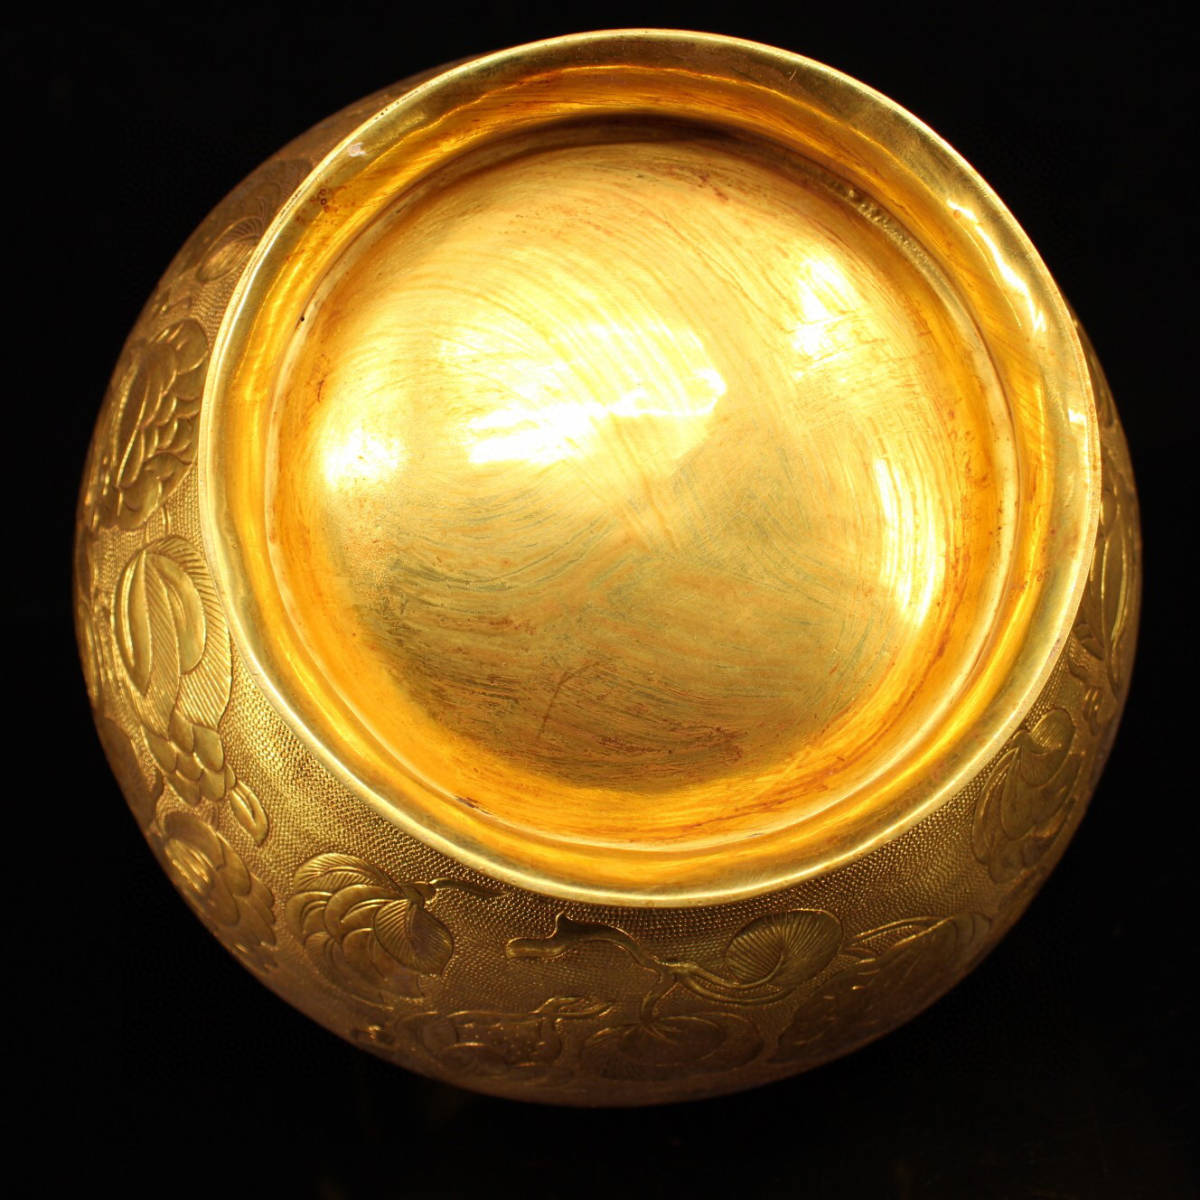 ▽鴻▽ 銅製 塗金 花鳥紋 提梁罐 置物 古賞物 中国古玩 中国古美術